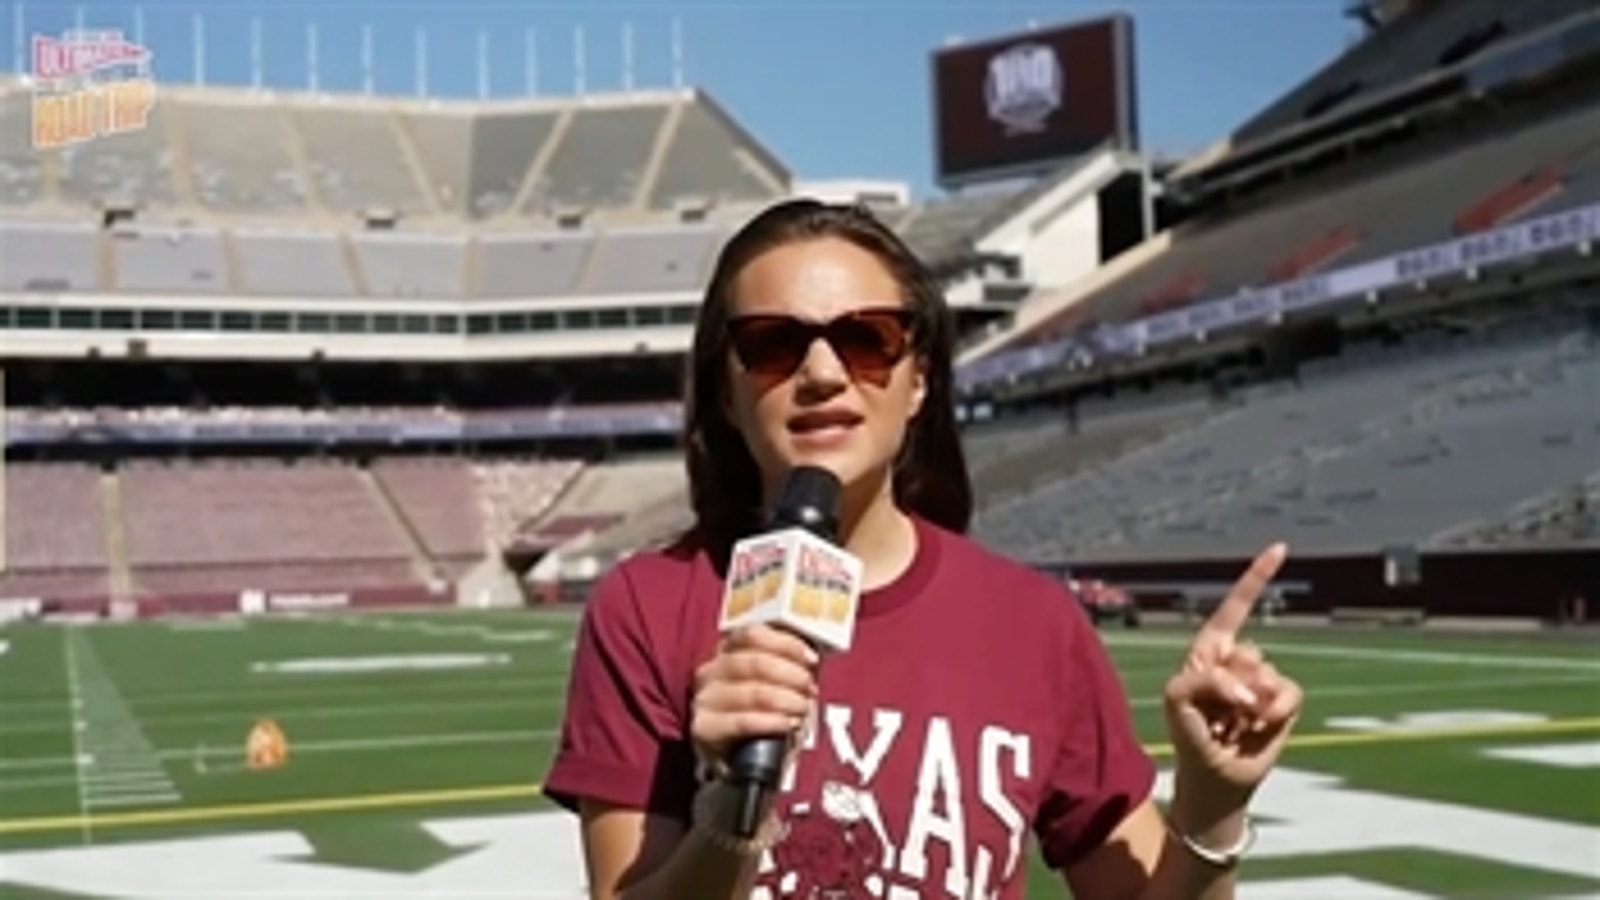 Charlotte Wilder's Texas A&M college stadium tour